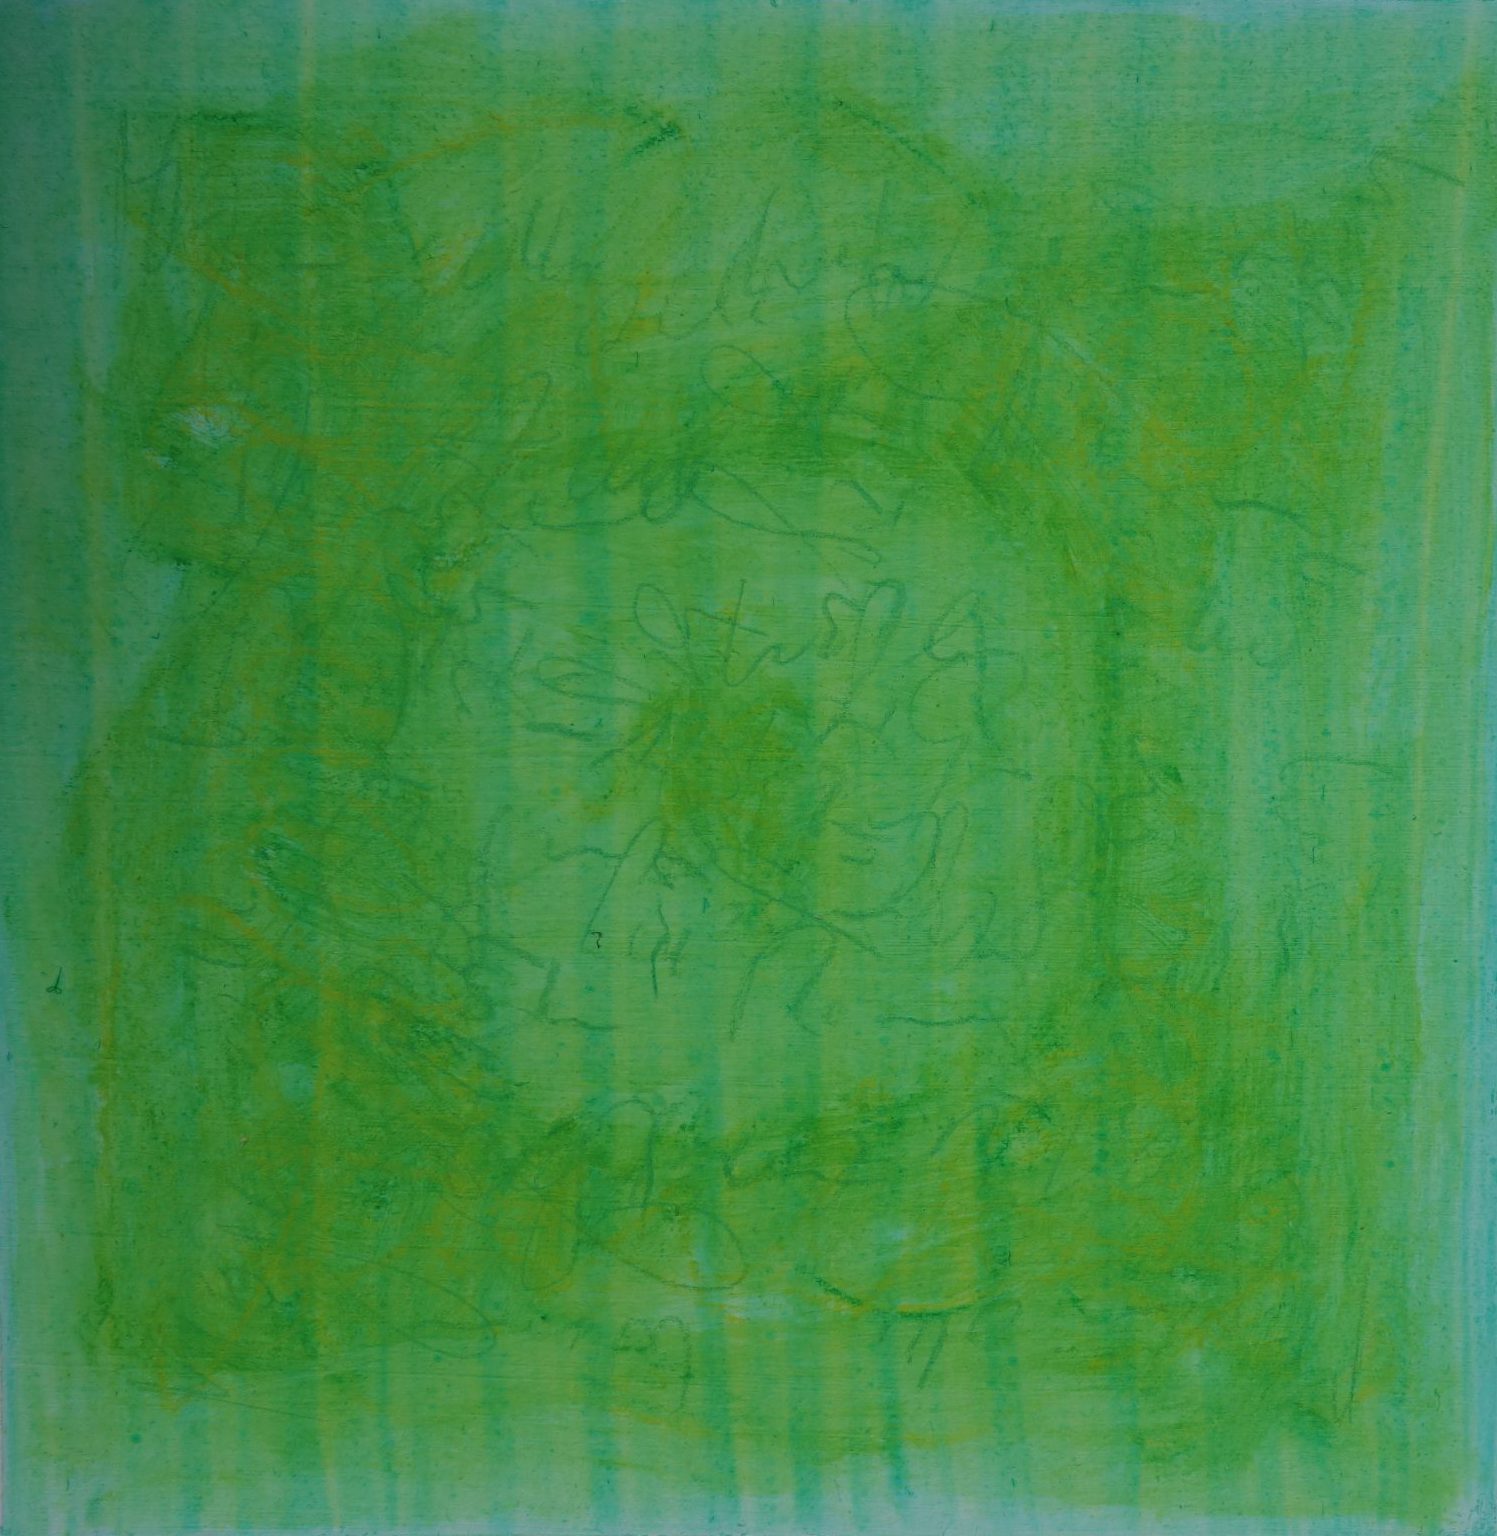 Dieses Bild zeigt ein Gemälde. Es ist grün. Man sieht verschiedene Grüntöne, ein Text ist leicht erkennbar, jedoch nicht lesbar. Ein Grünton ist kräftiger von der Farbe und rund in dem quadratischen Bild angeordnet. Der gleiche Farbton ist auch als Punkt mittig von diesem Kreis.